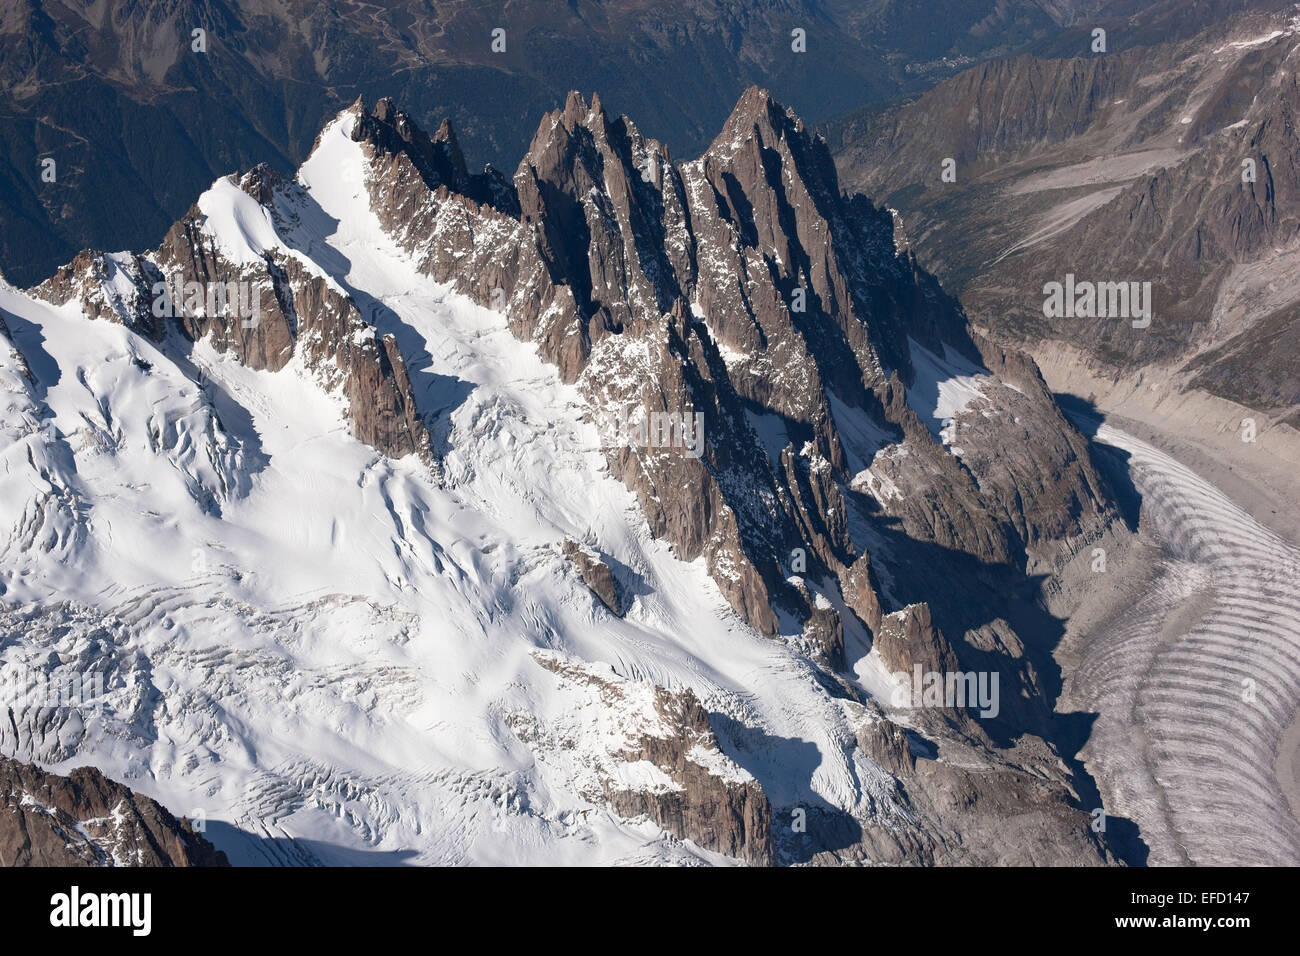 LUFTAUFNAHME. Plan, Blaitière und Grépon. Gipfel bekannt als Needles of Chamonix. Vallée Blanche Gletscher links unten. Haute-Savoie, Frankreich. Stockfoto